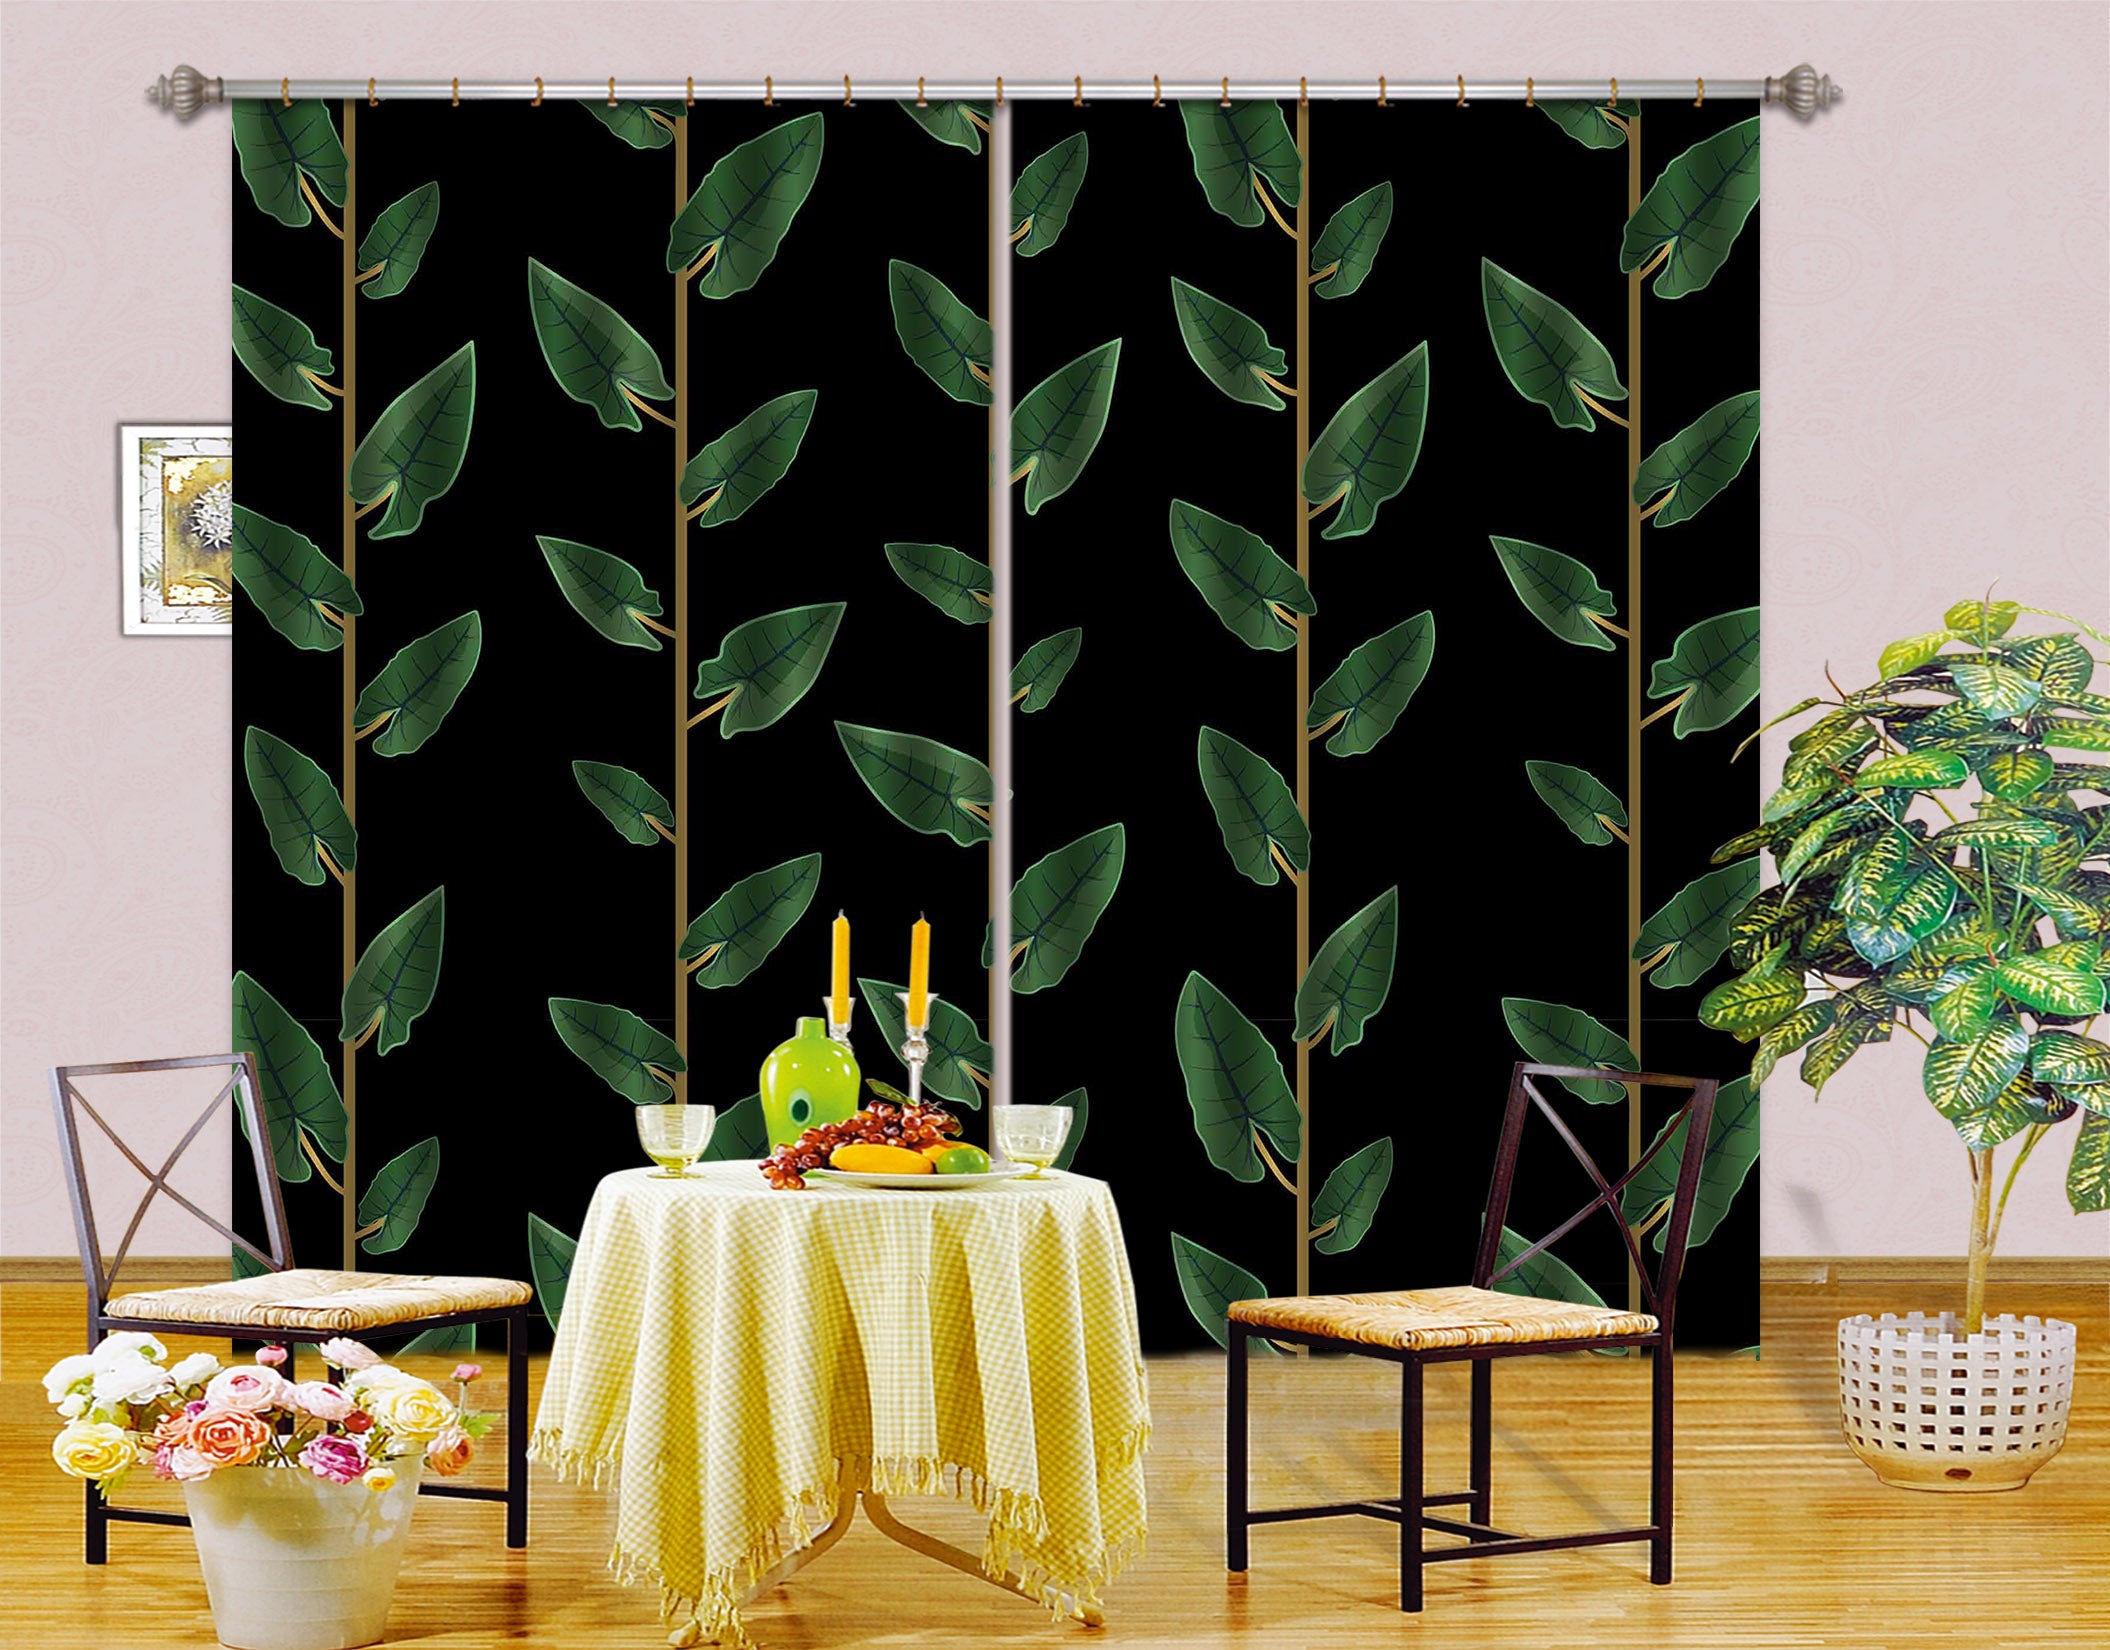 3D Leaves Vine 11163 Kashmira Jayaprakash Curtain Curtains Drapes